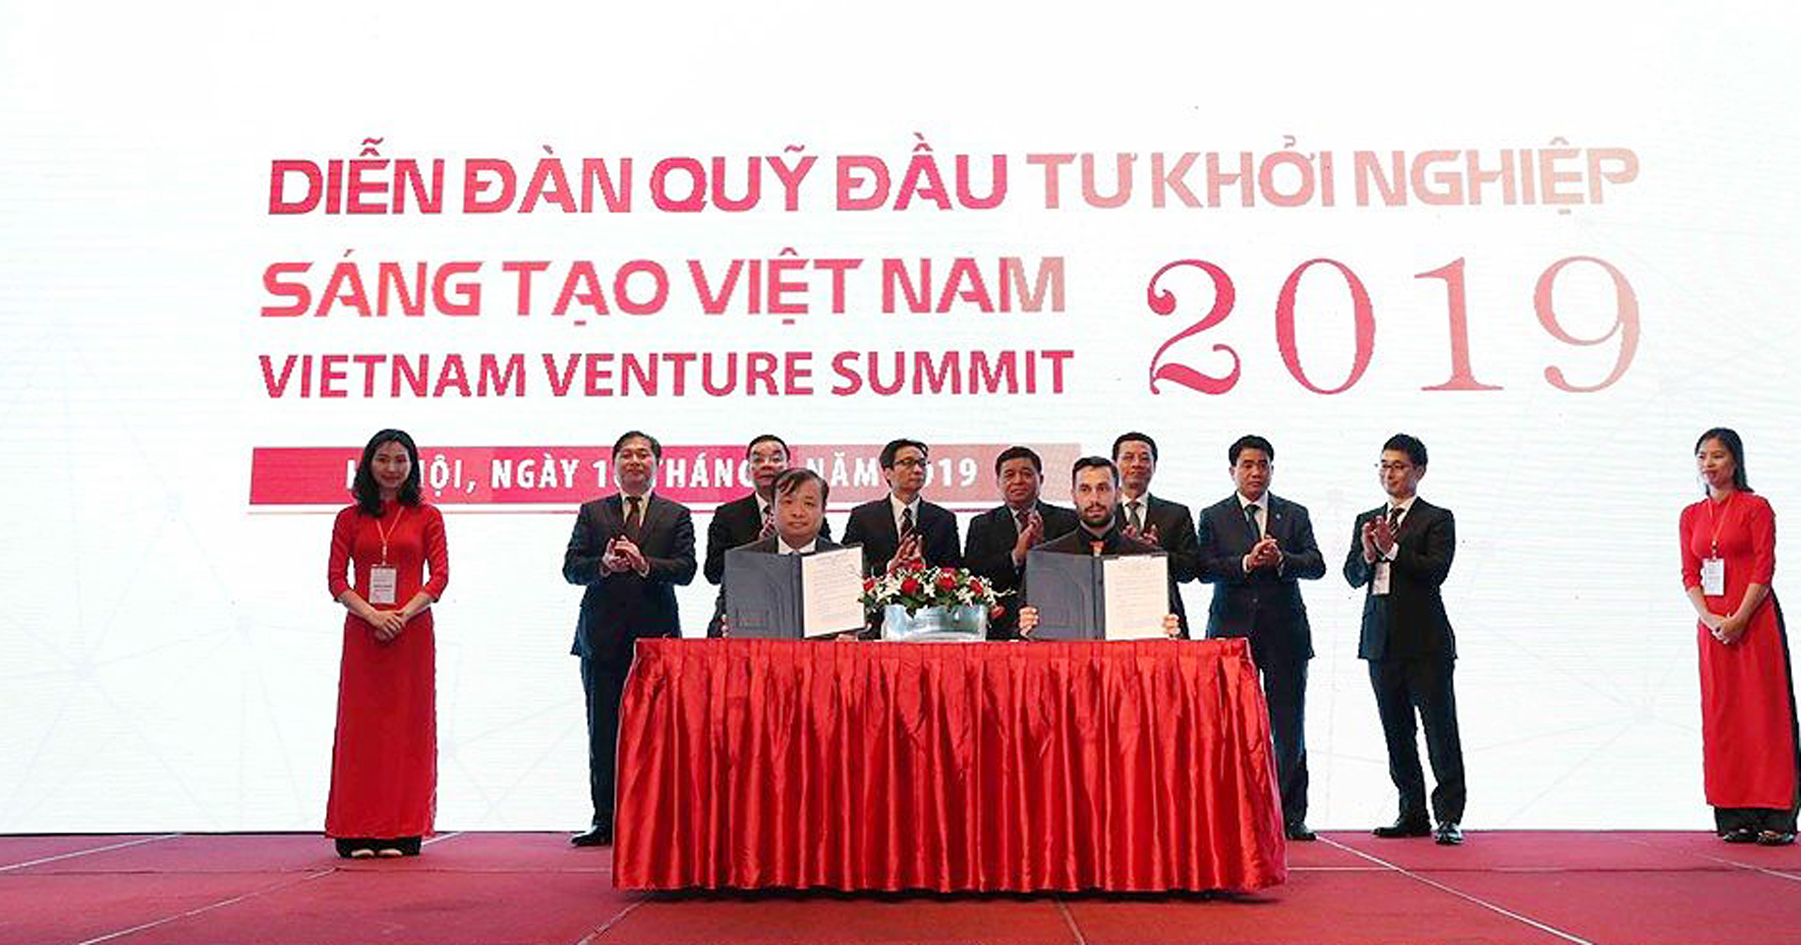 Diễn đàn Quỹ Đầu tư khởi nghiệp sáng tạo Việt Nam 2019: 10 nghìn tỷ đồng cam kết đầu tư vào start-up Việt